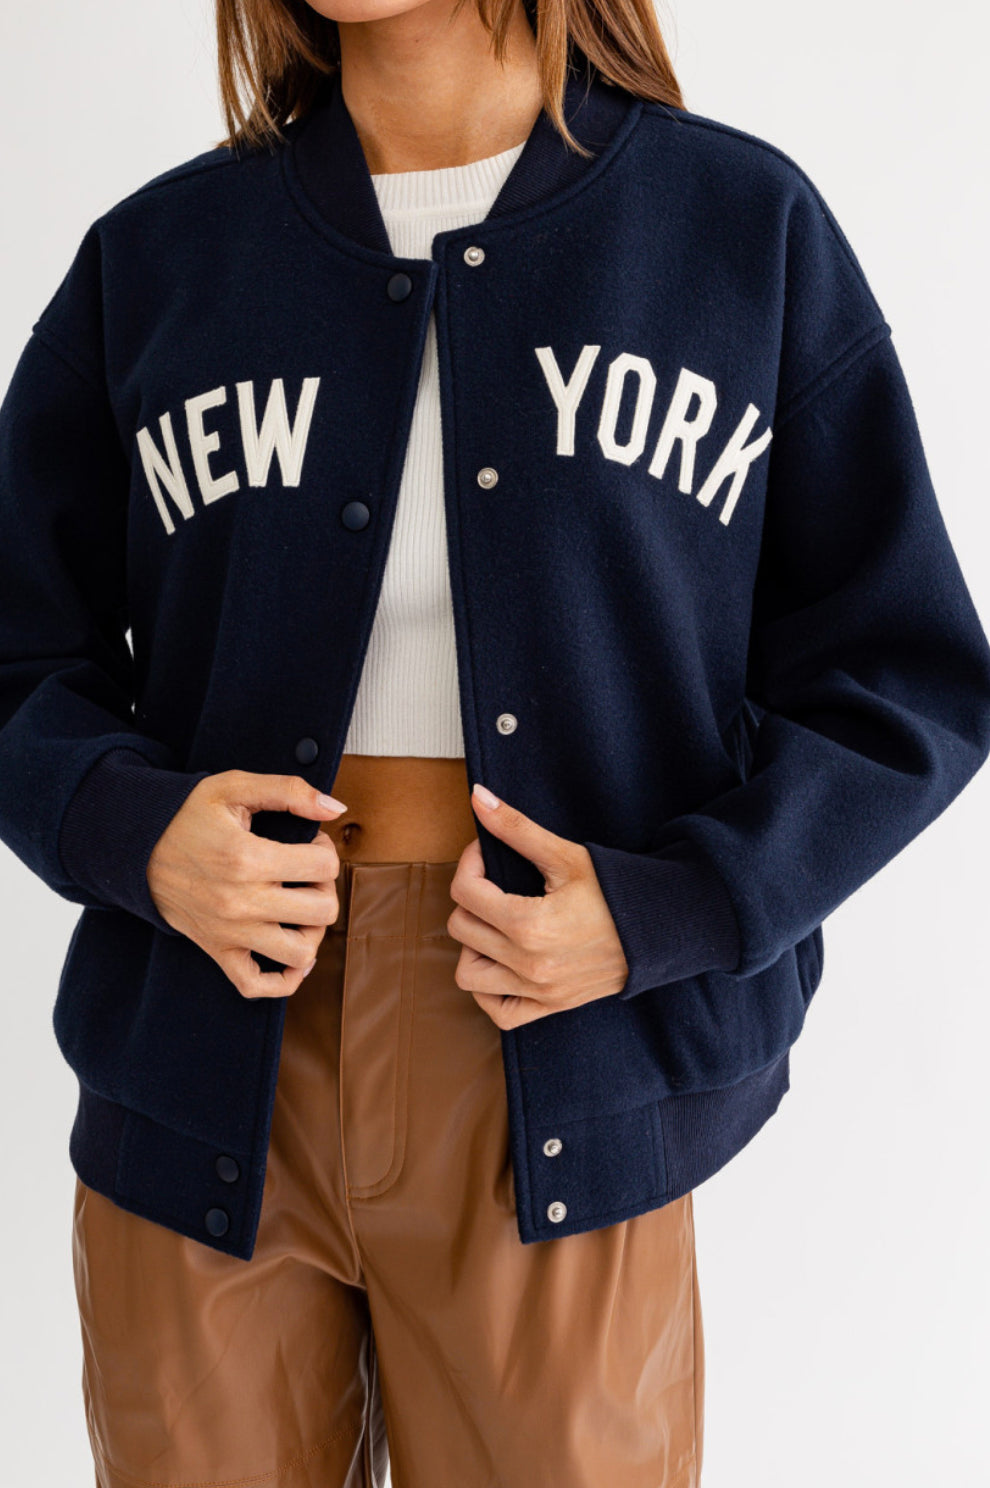 NEW YORK Varsity Jacket